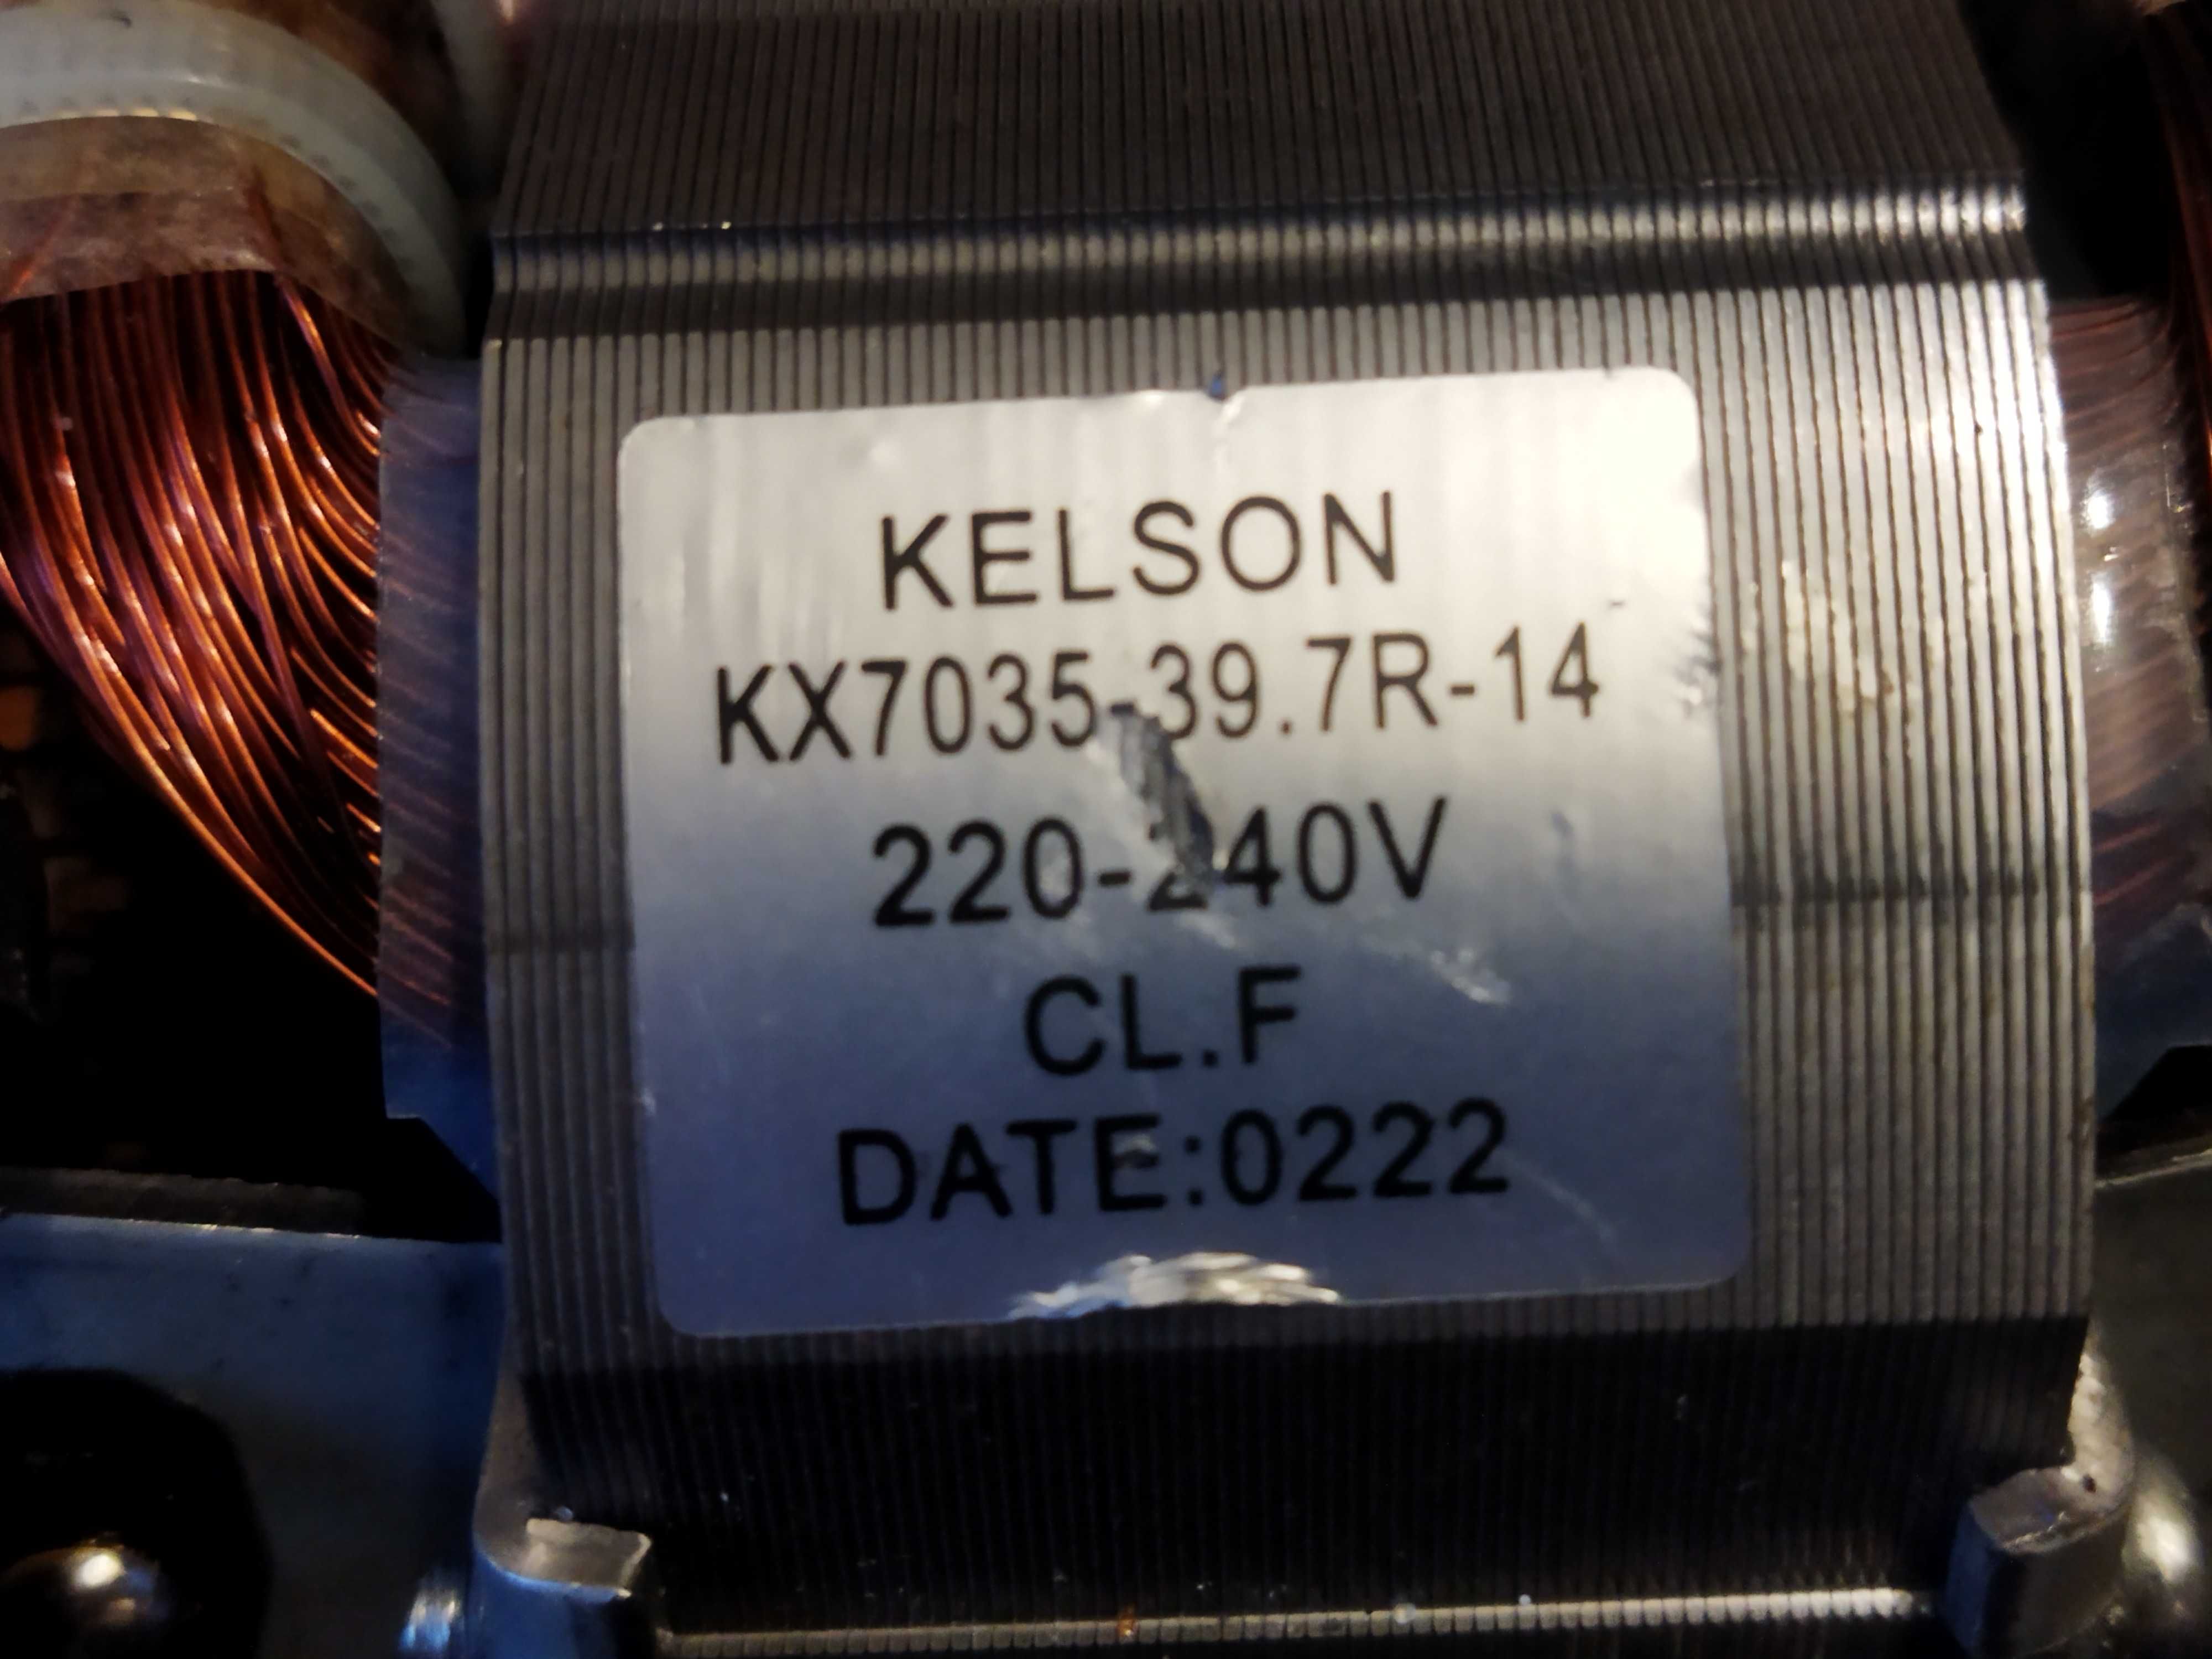 Мотор KELSON KX 7035-39.7R-14 для кухонного комбайна Moulinex.